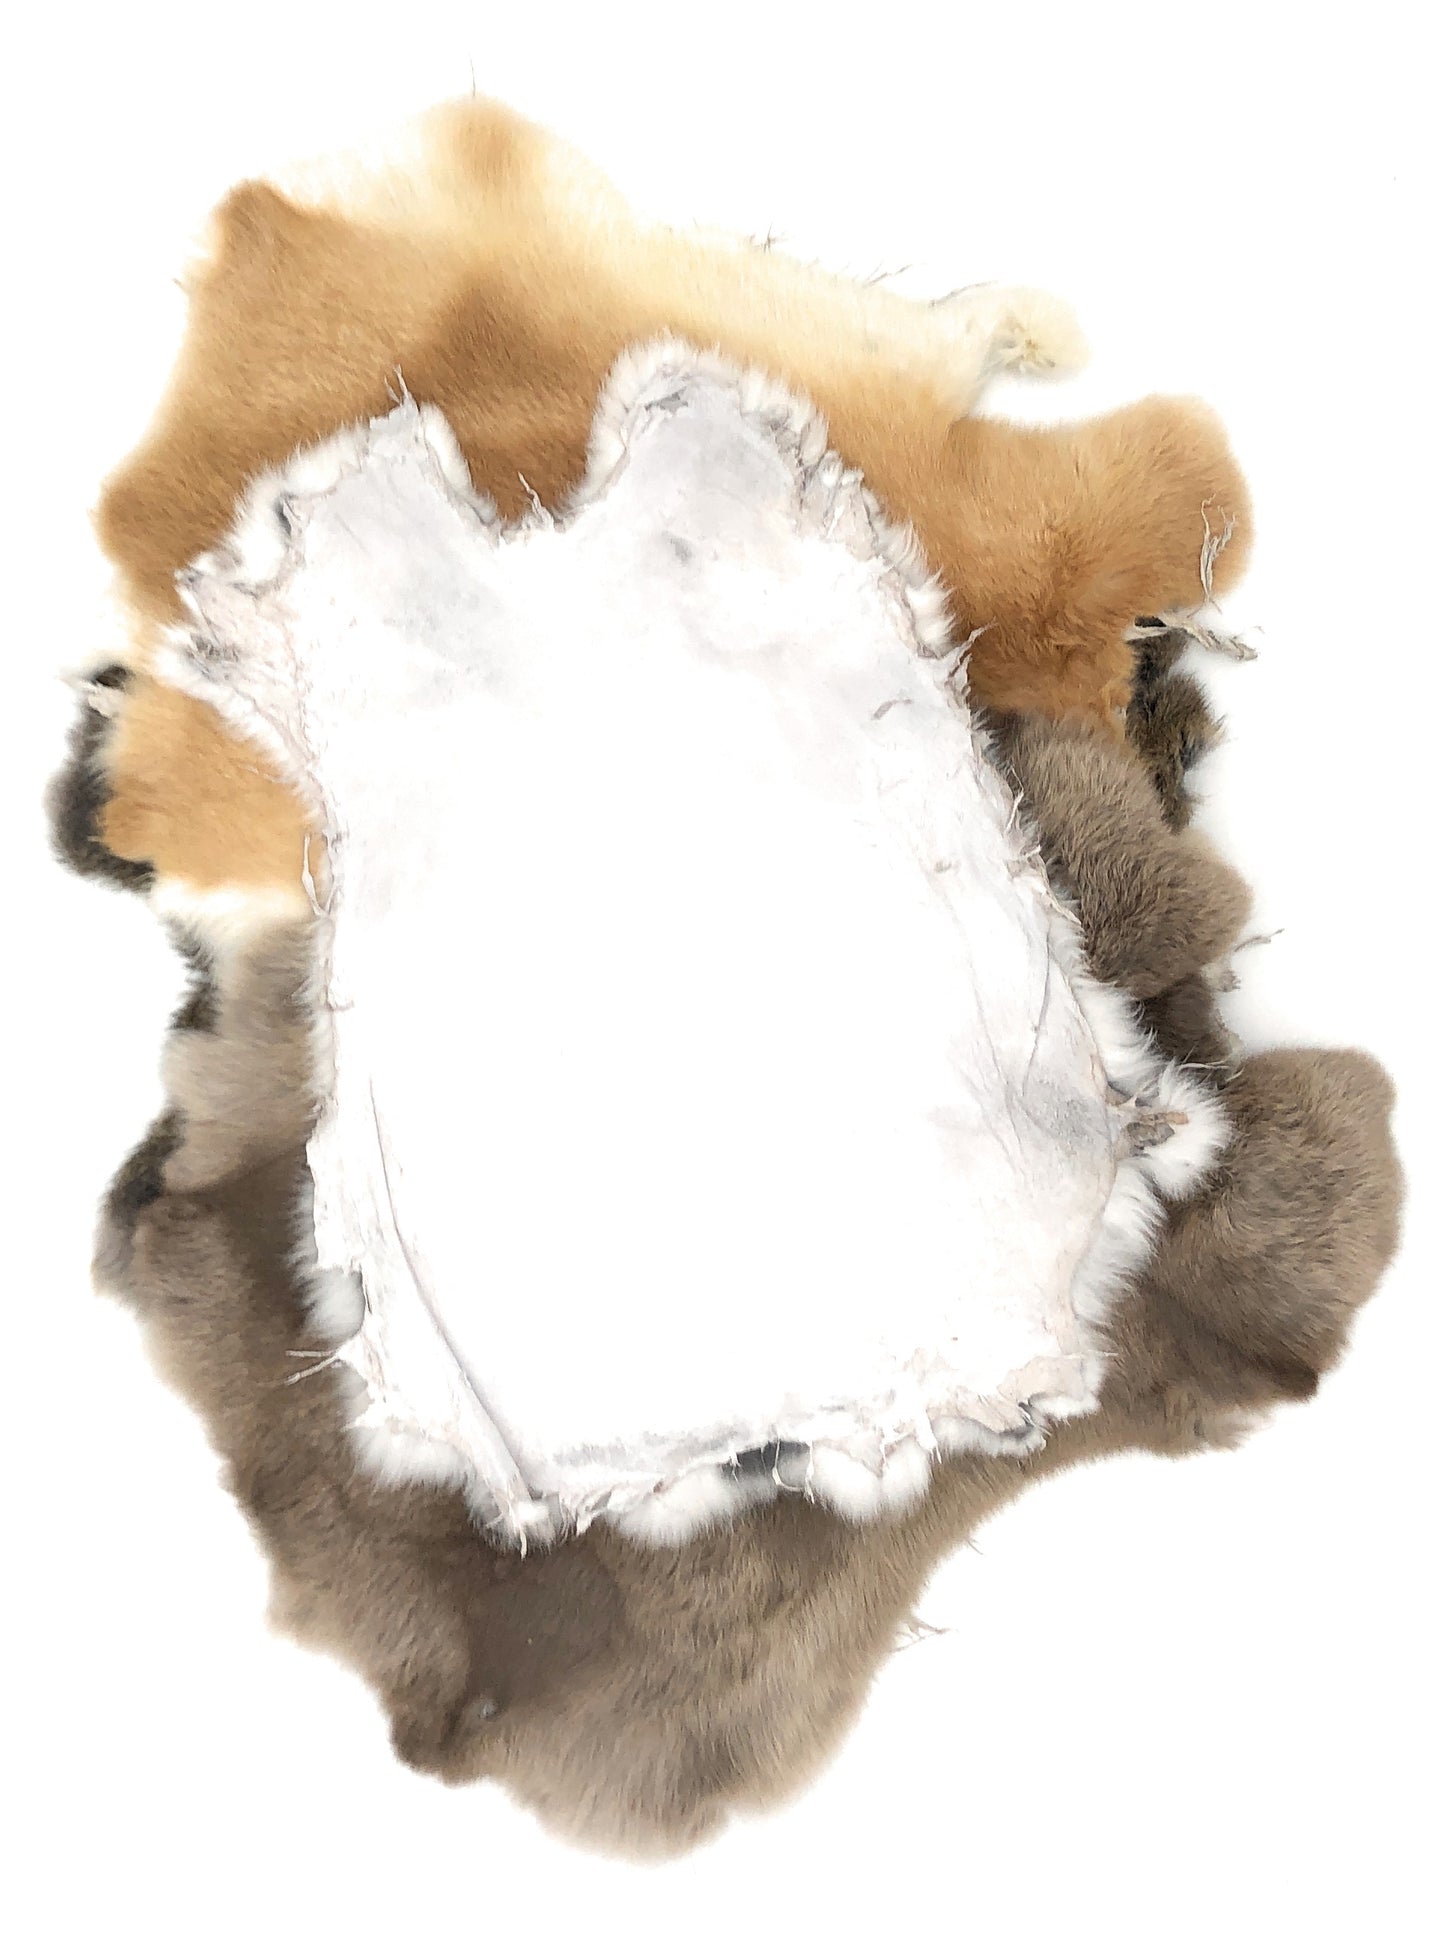 1 Pcs Natural Color Rabbit Fur Pelts - Craft Grade Assorted